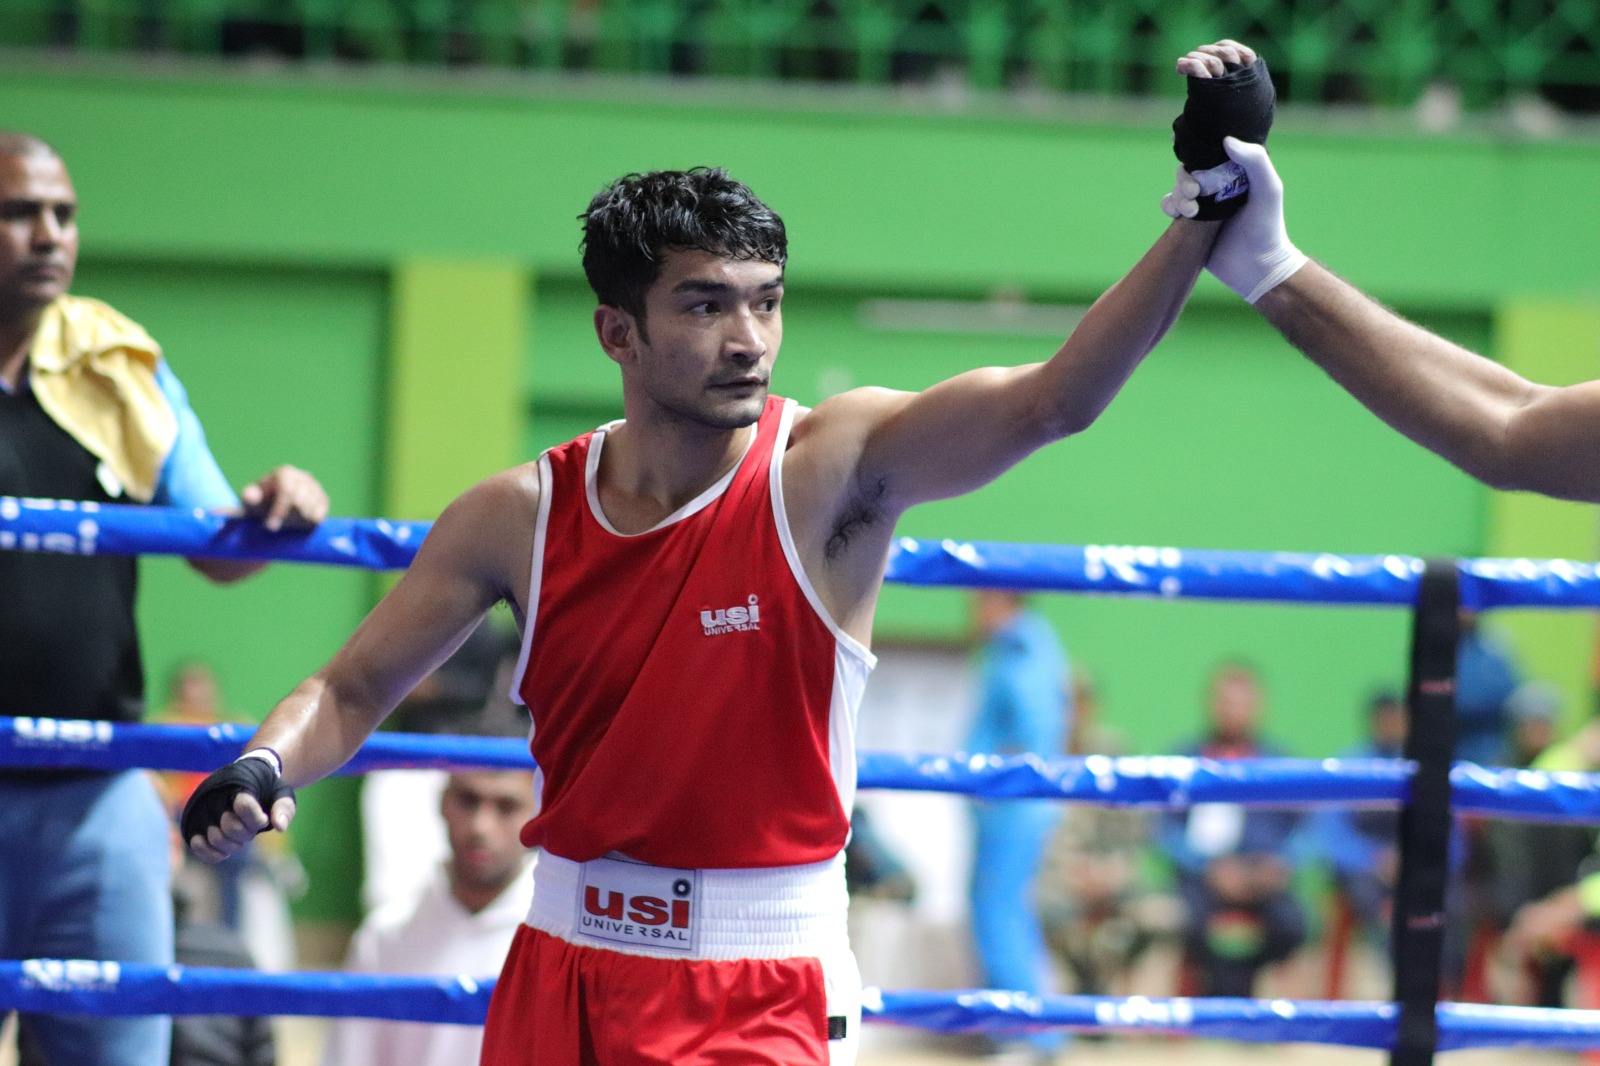 National Boxing Championship: Top boxers Shiva Thapa, Amit Panghal & M'laya's Bhalang Shadap progress on Day 3